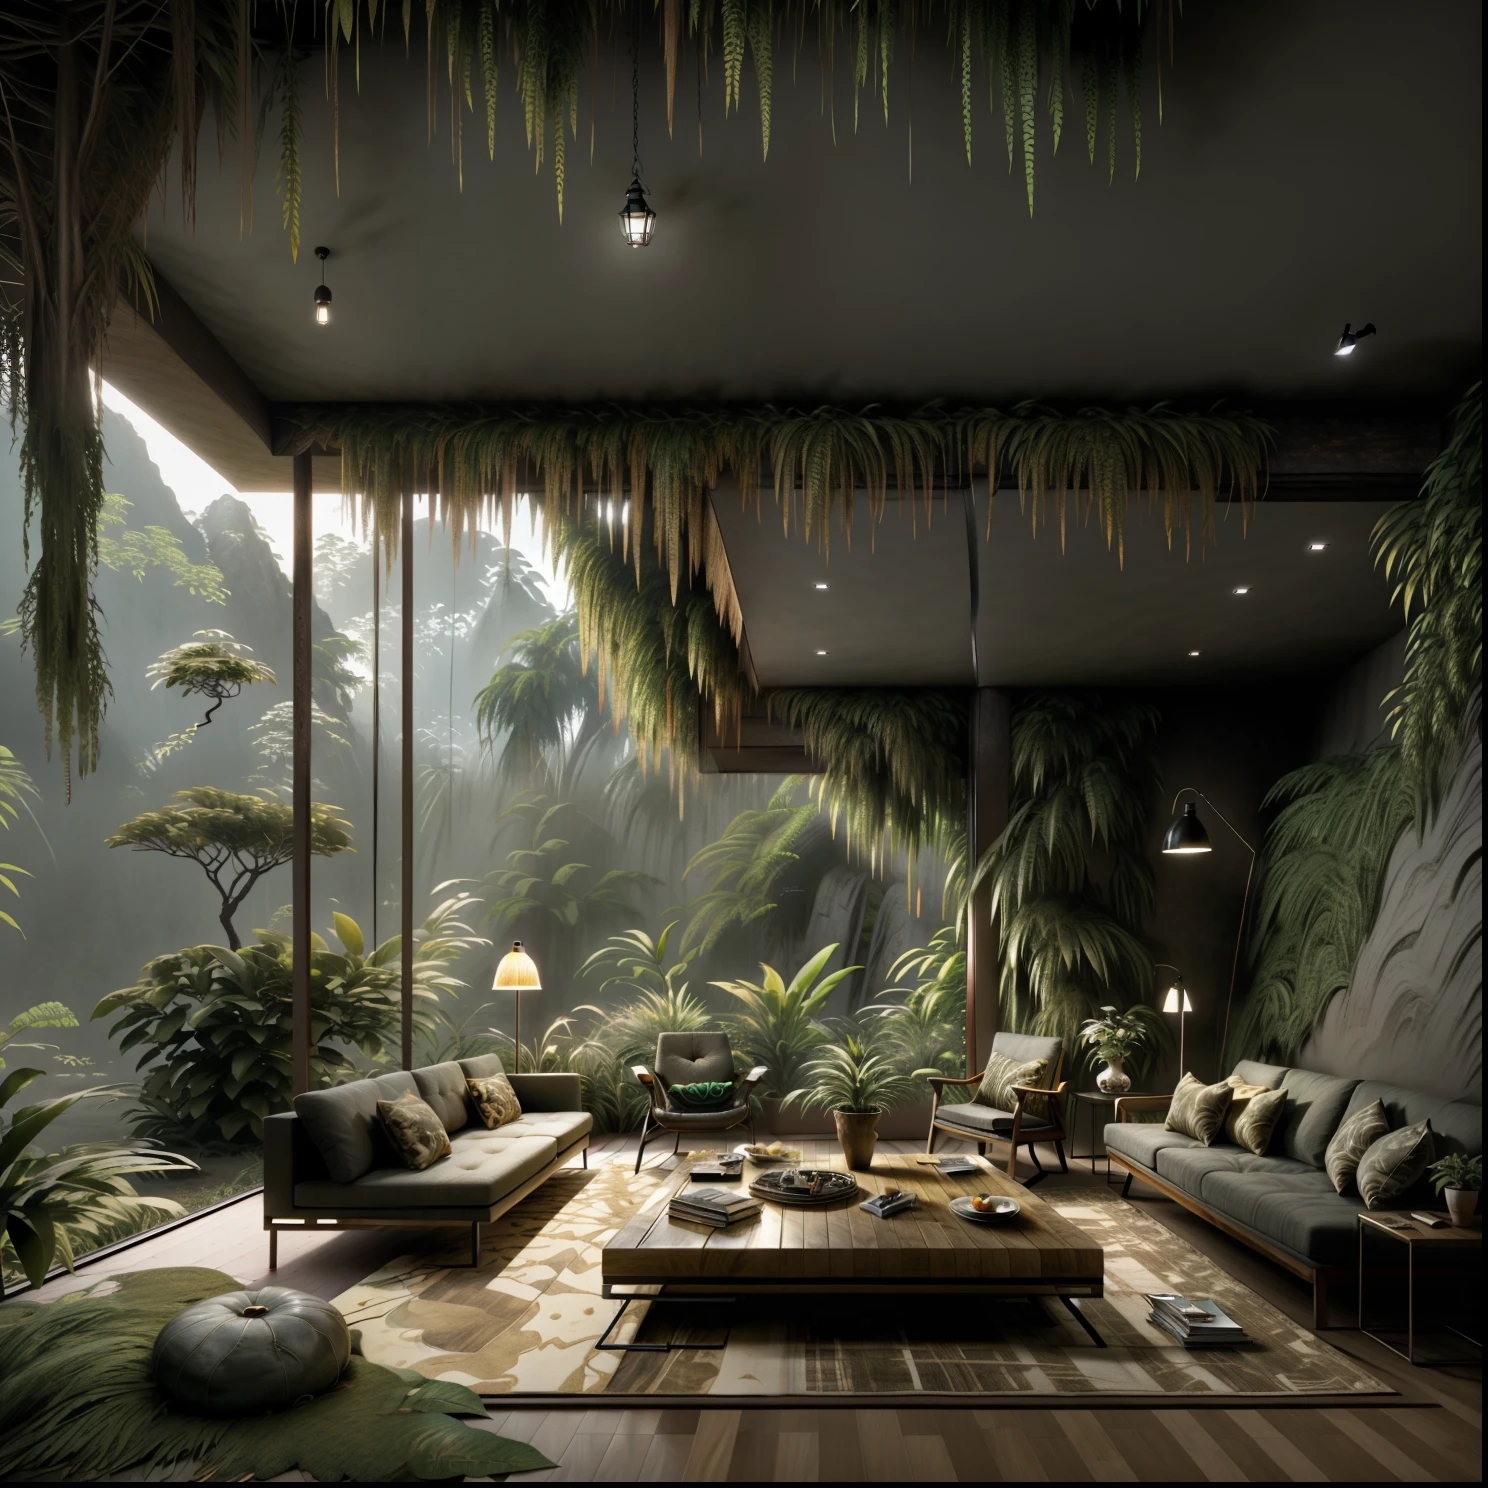 客廳配有一張大沙發和一張帶燈的桌子, mountainous 叢林環境, 放鬆的環境, 美麗的風景渲染, 出色的 3D 渲染, 自然與建築相遇, 逼真的幻想渲染, 神奇的氛围, 叢林環境, 森林裡的房子, 融入山中, 現實建築, 建在湖邊的森林裡, 封裝渲染